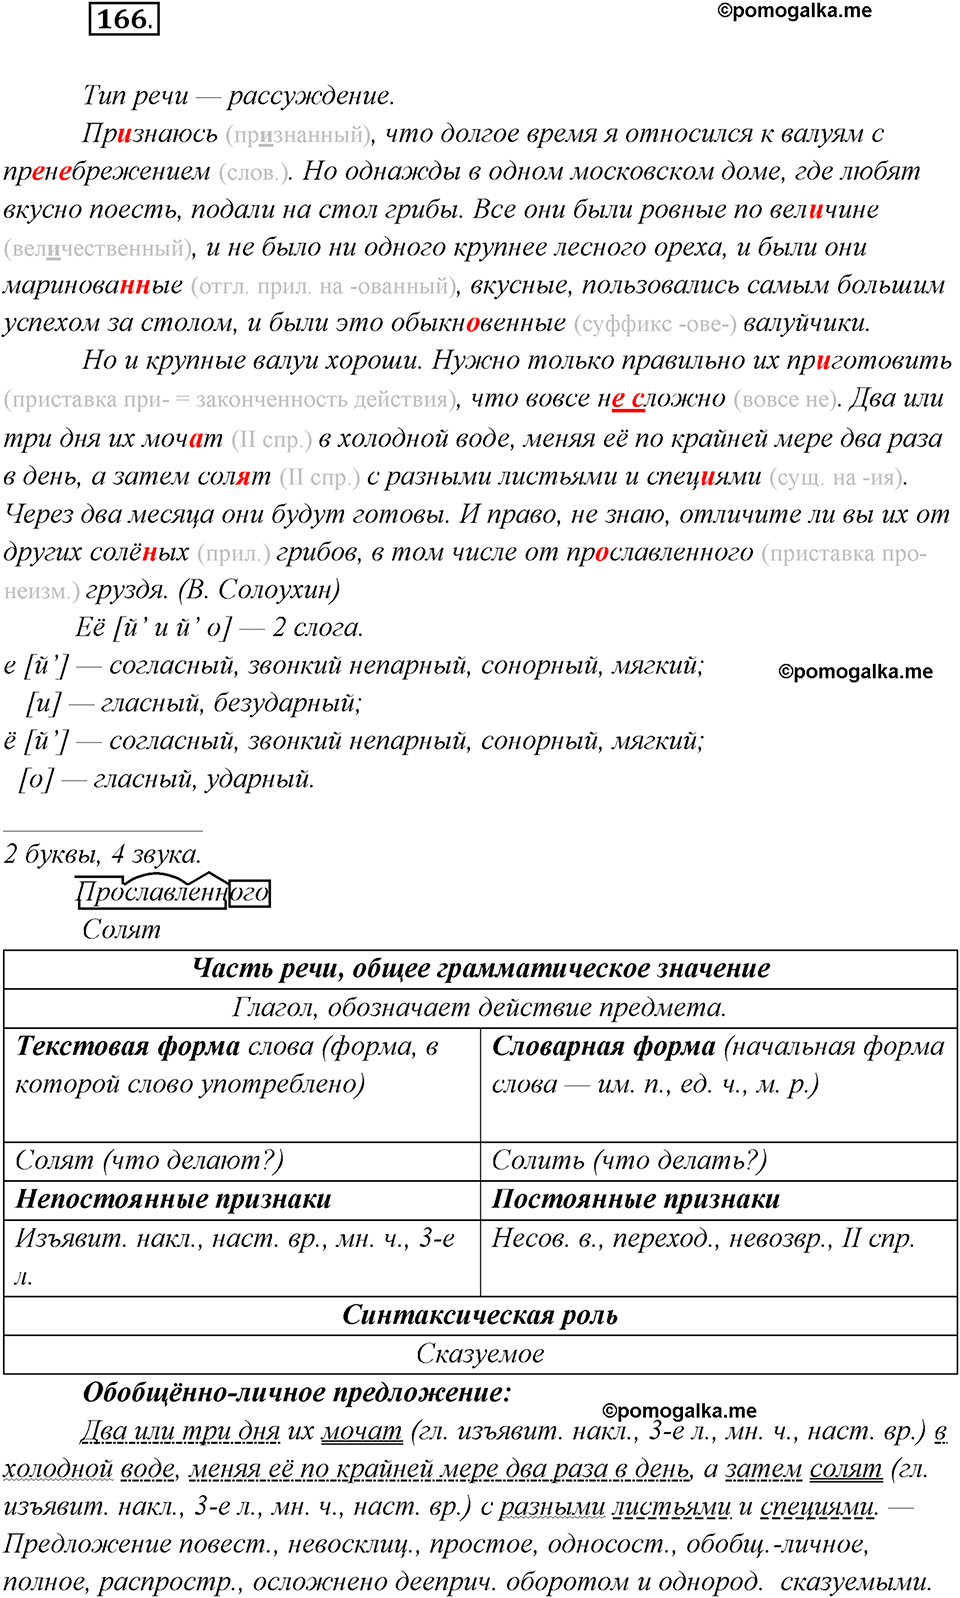 страница 104 упражнение 166 русский язык 8 класс Рыбченкова 2018 год